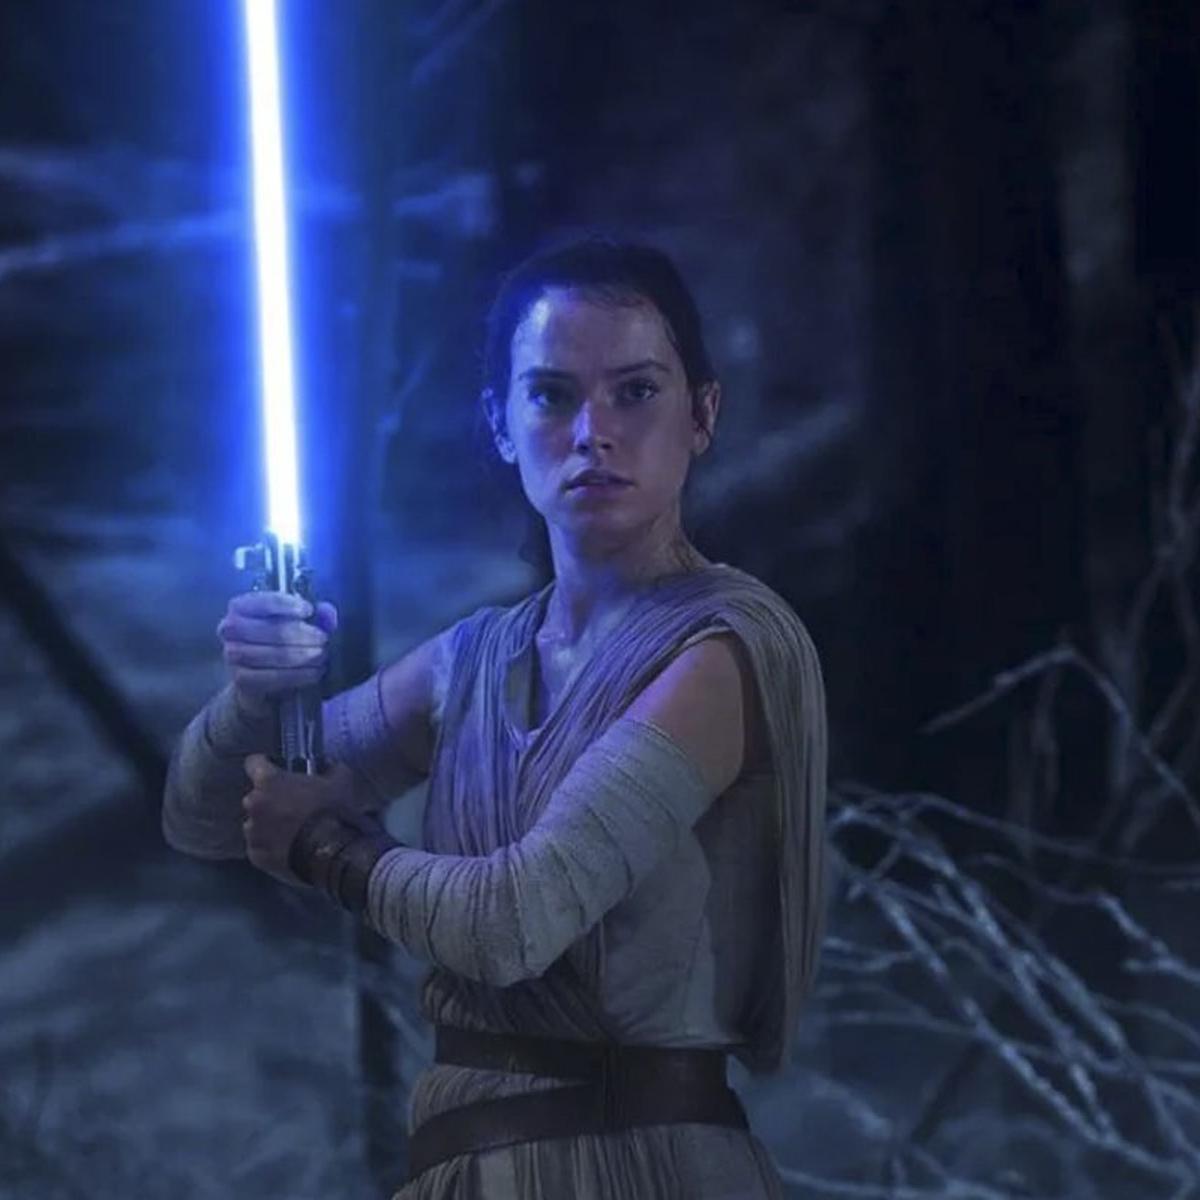 Star Wars aproxima-se do fim da mitologia dos Skywalker no episódio IX